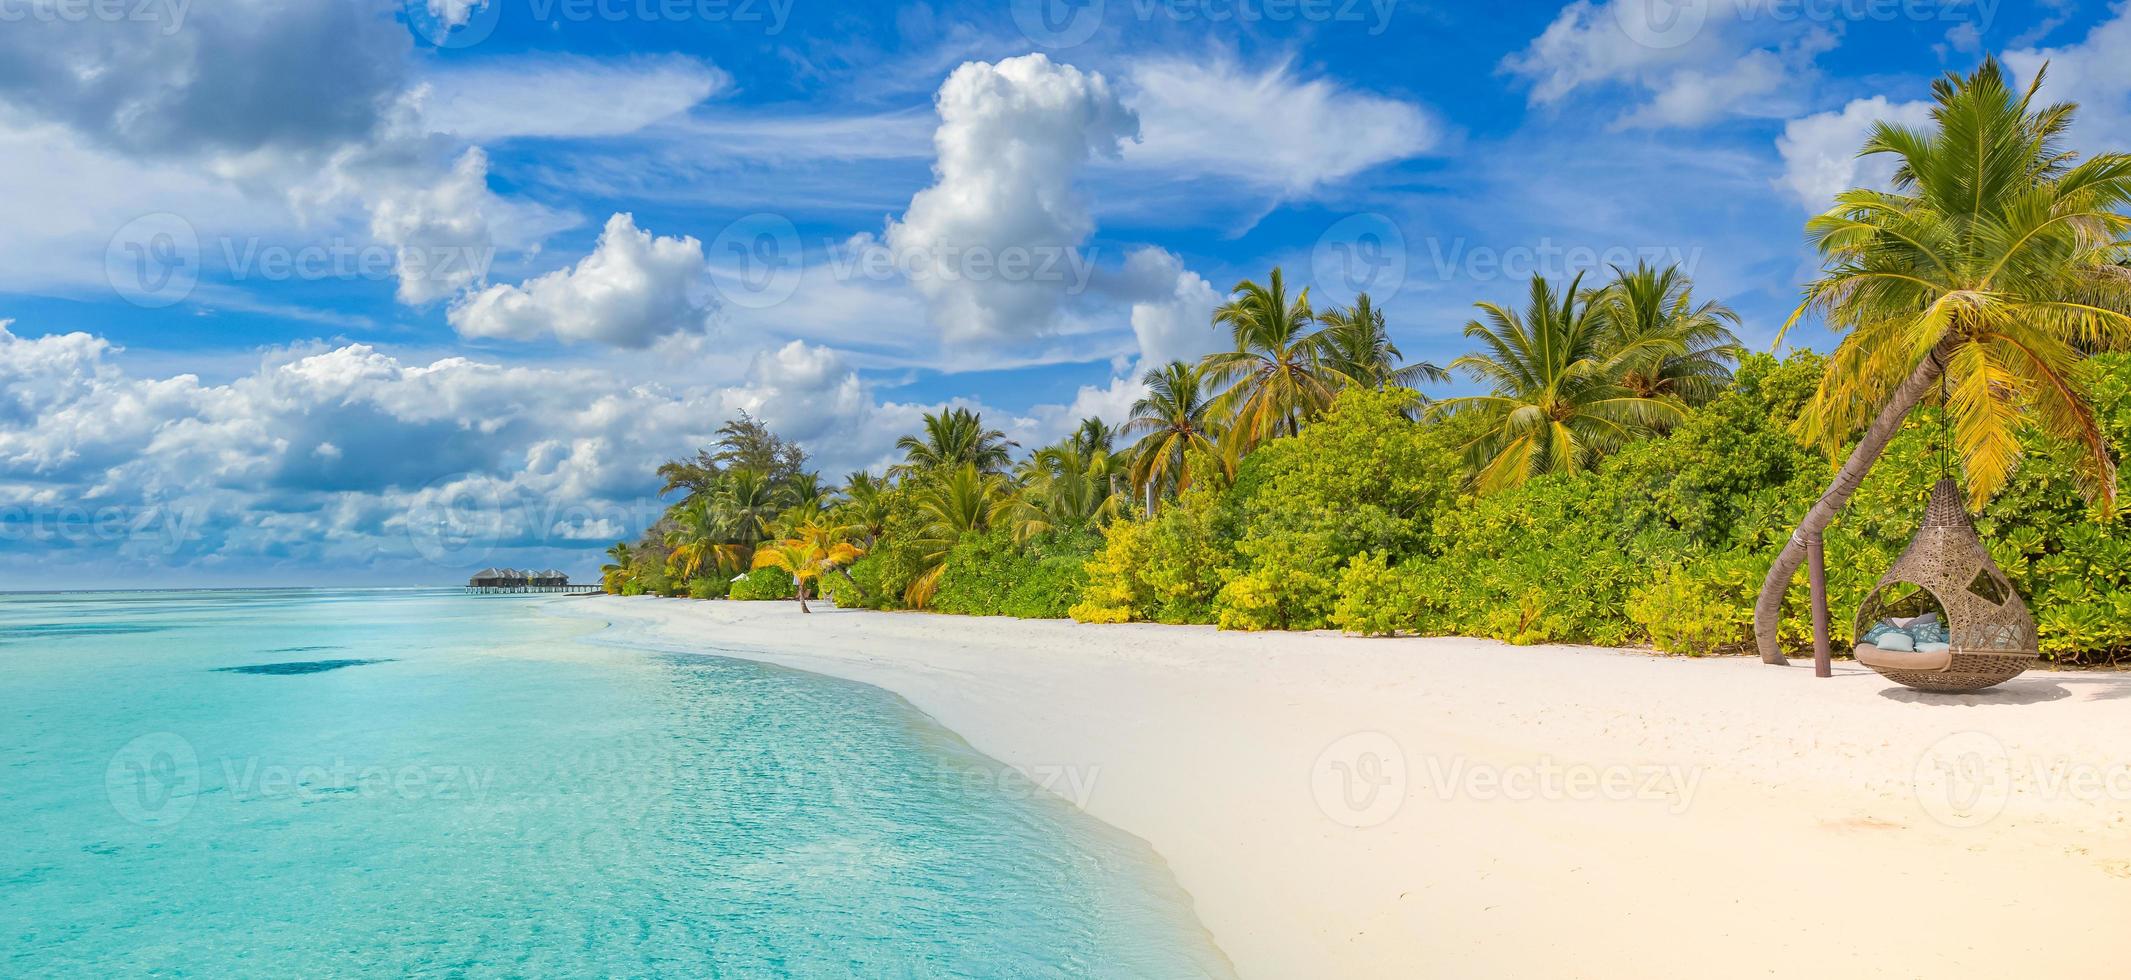 spiaggia dell'isola delle maldive. paesaggio tropicale di paesaggi estivi, sabbia bianca con palme. destinazione di vacanza di viaggio di lusso. paesaggio esotico della spiaggia. natura straordinaria, relax, libertà modello di natura foto